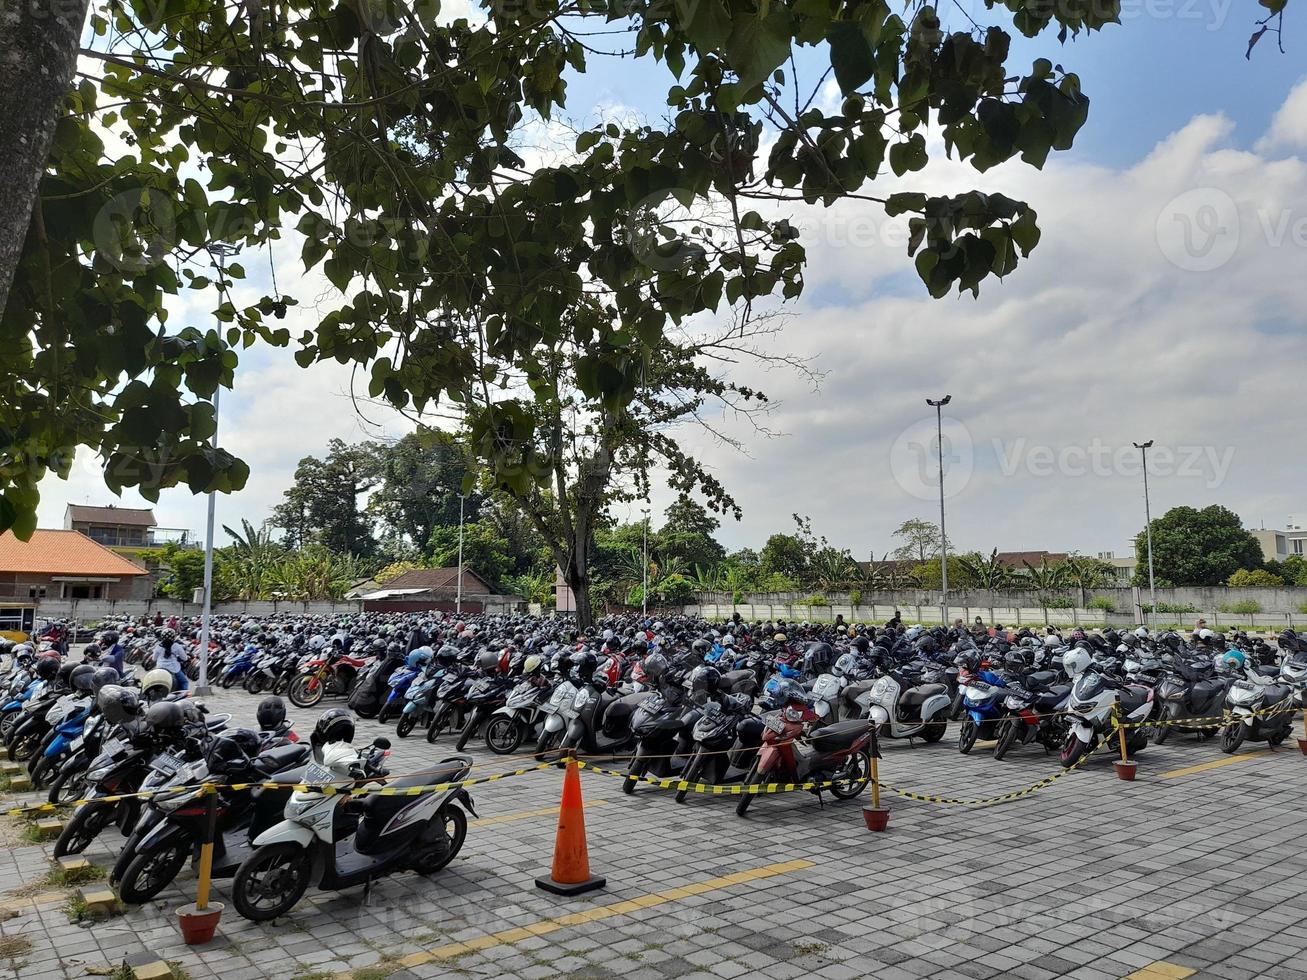 motos garées en ligne dans un parking pour motos. photo